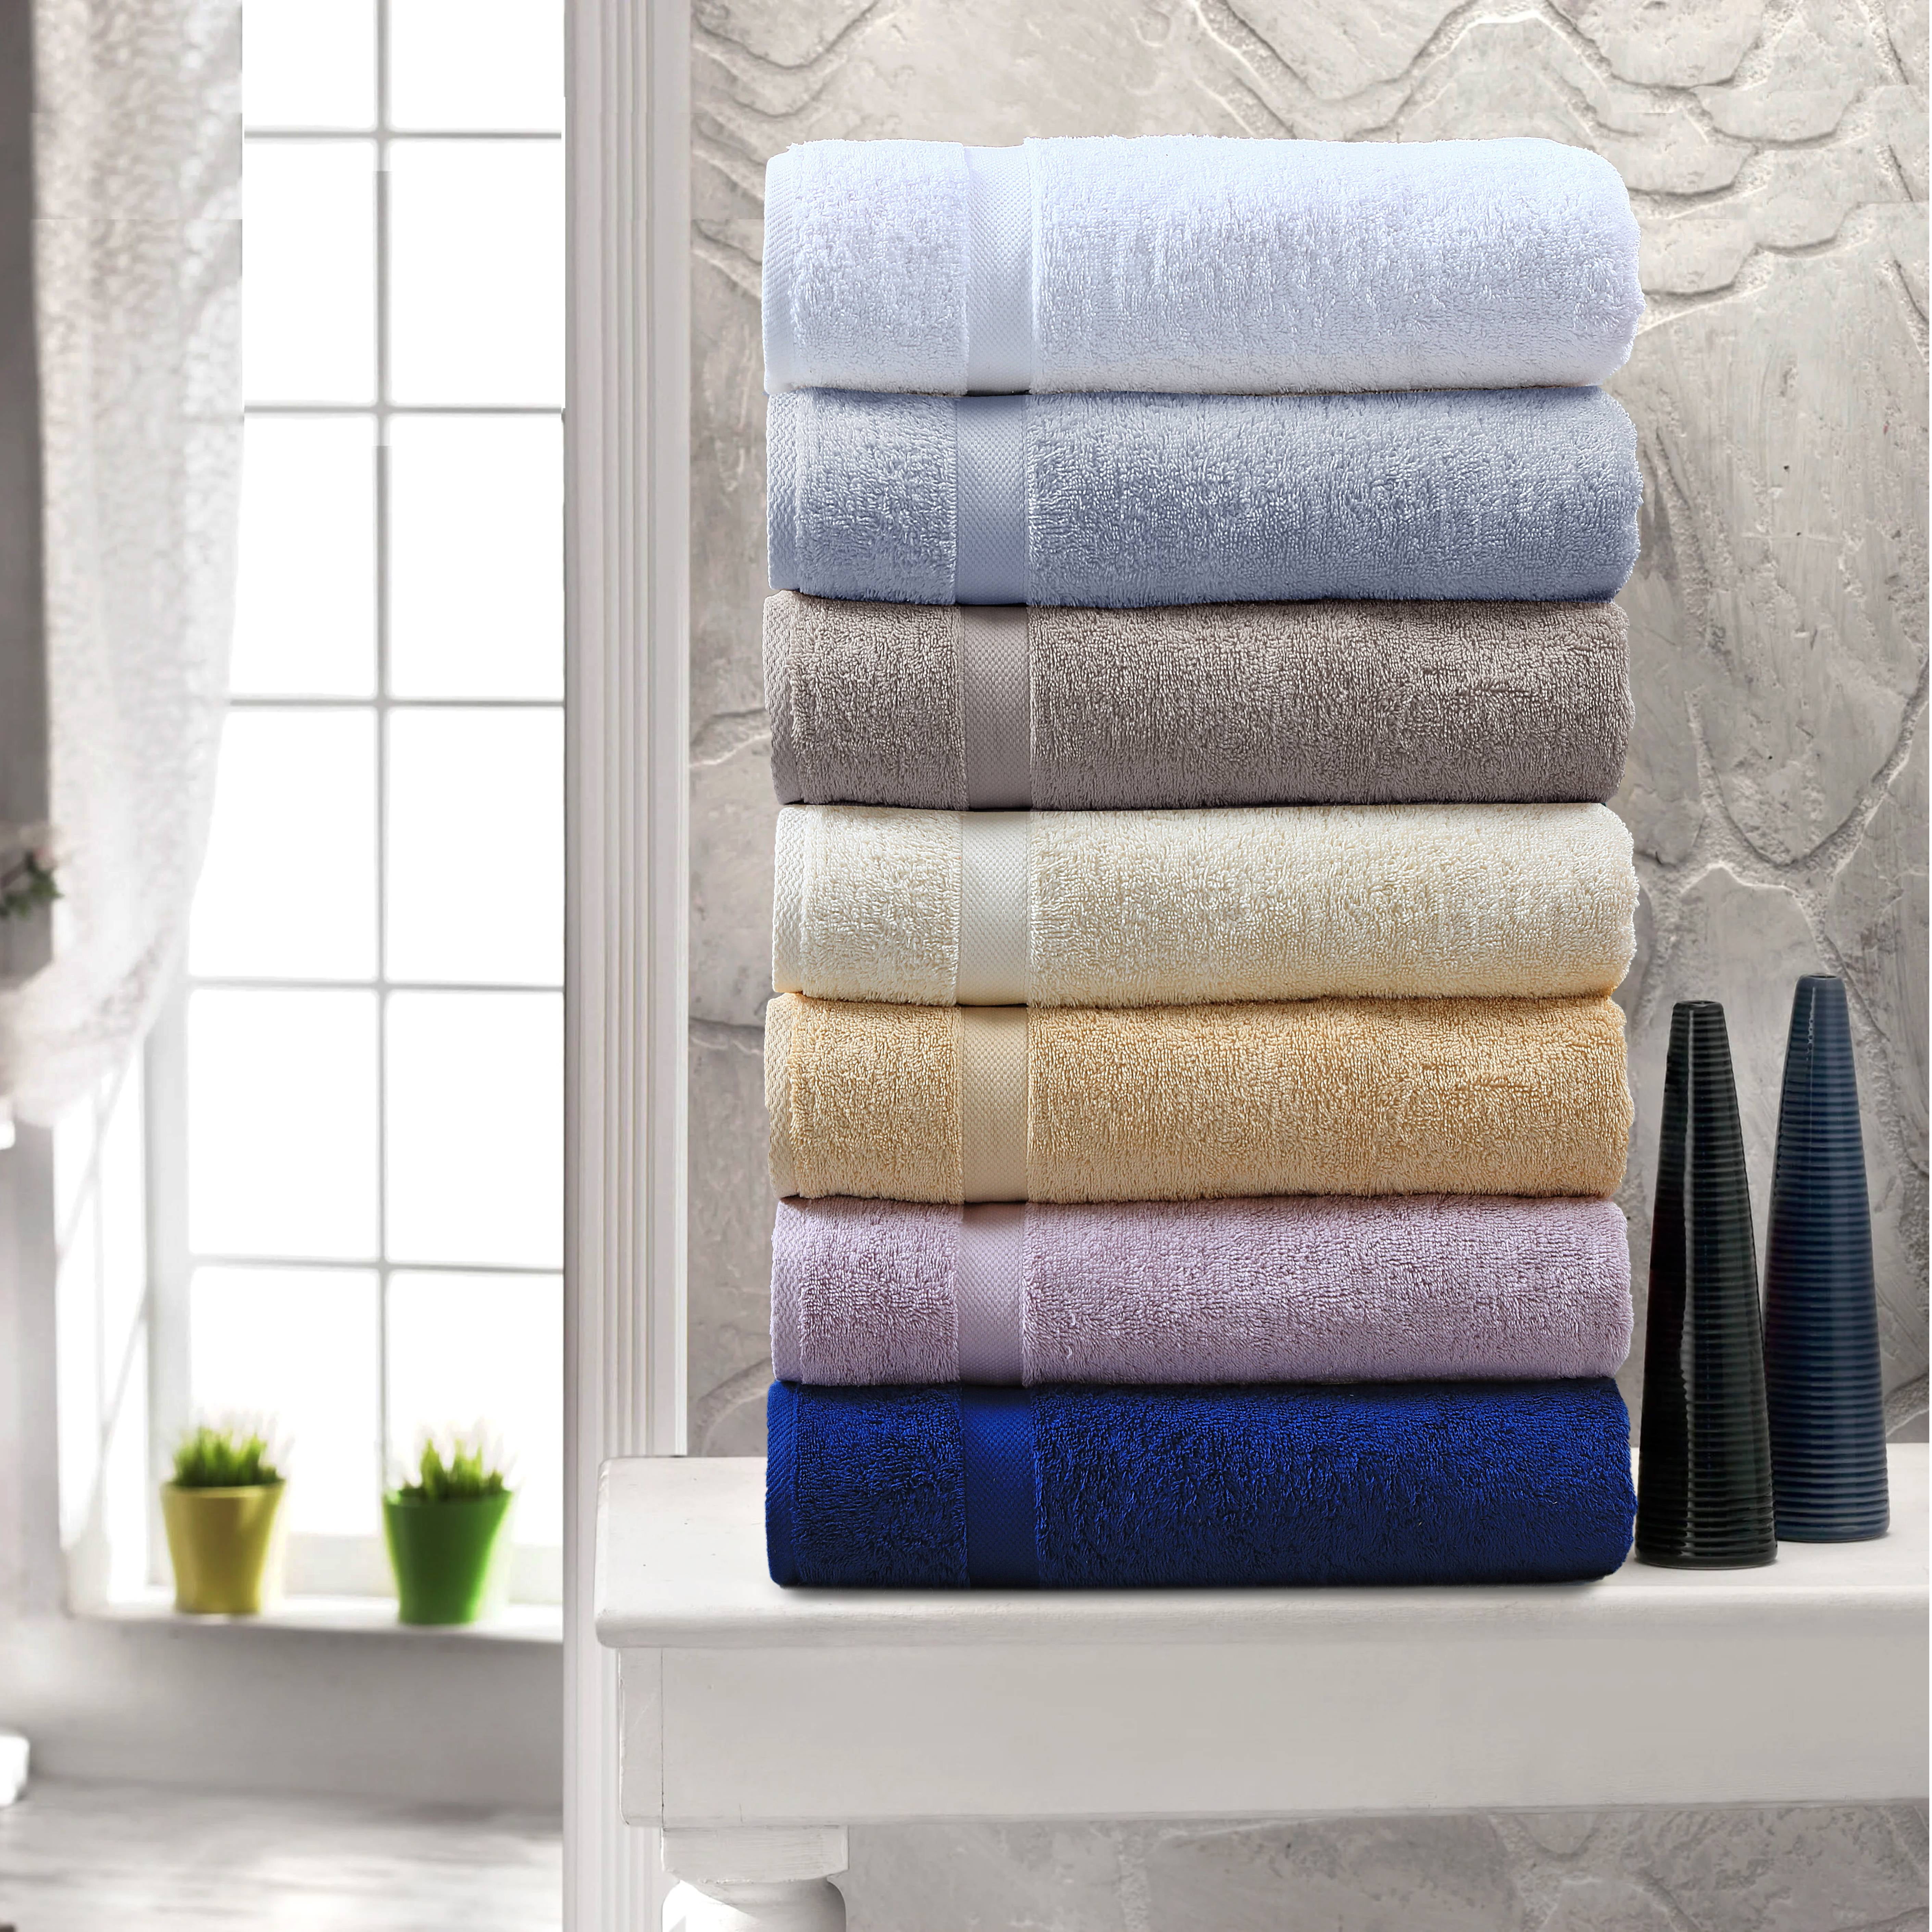 Cotton Bath Towels 6 Pack Cotton Towels, Aqua, 22 x 44 Inches